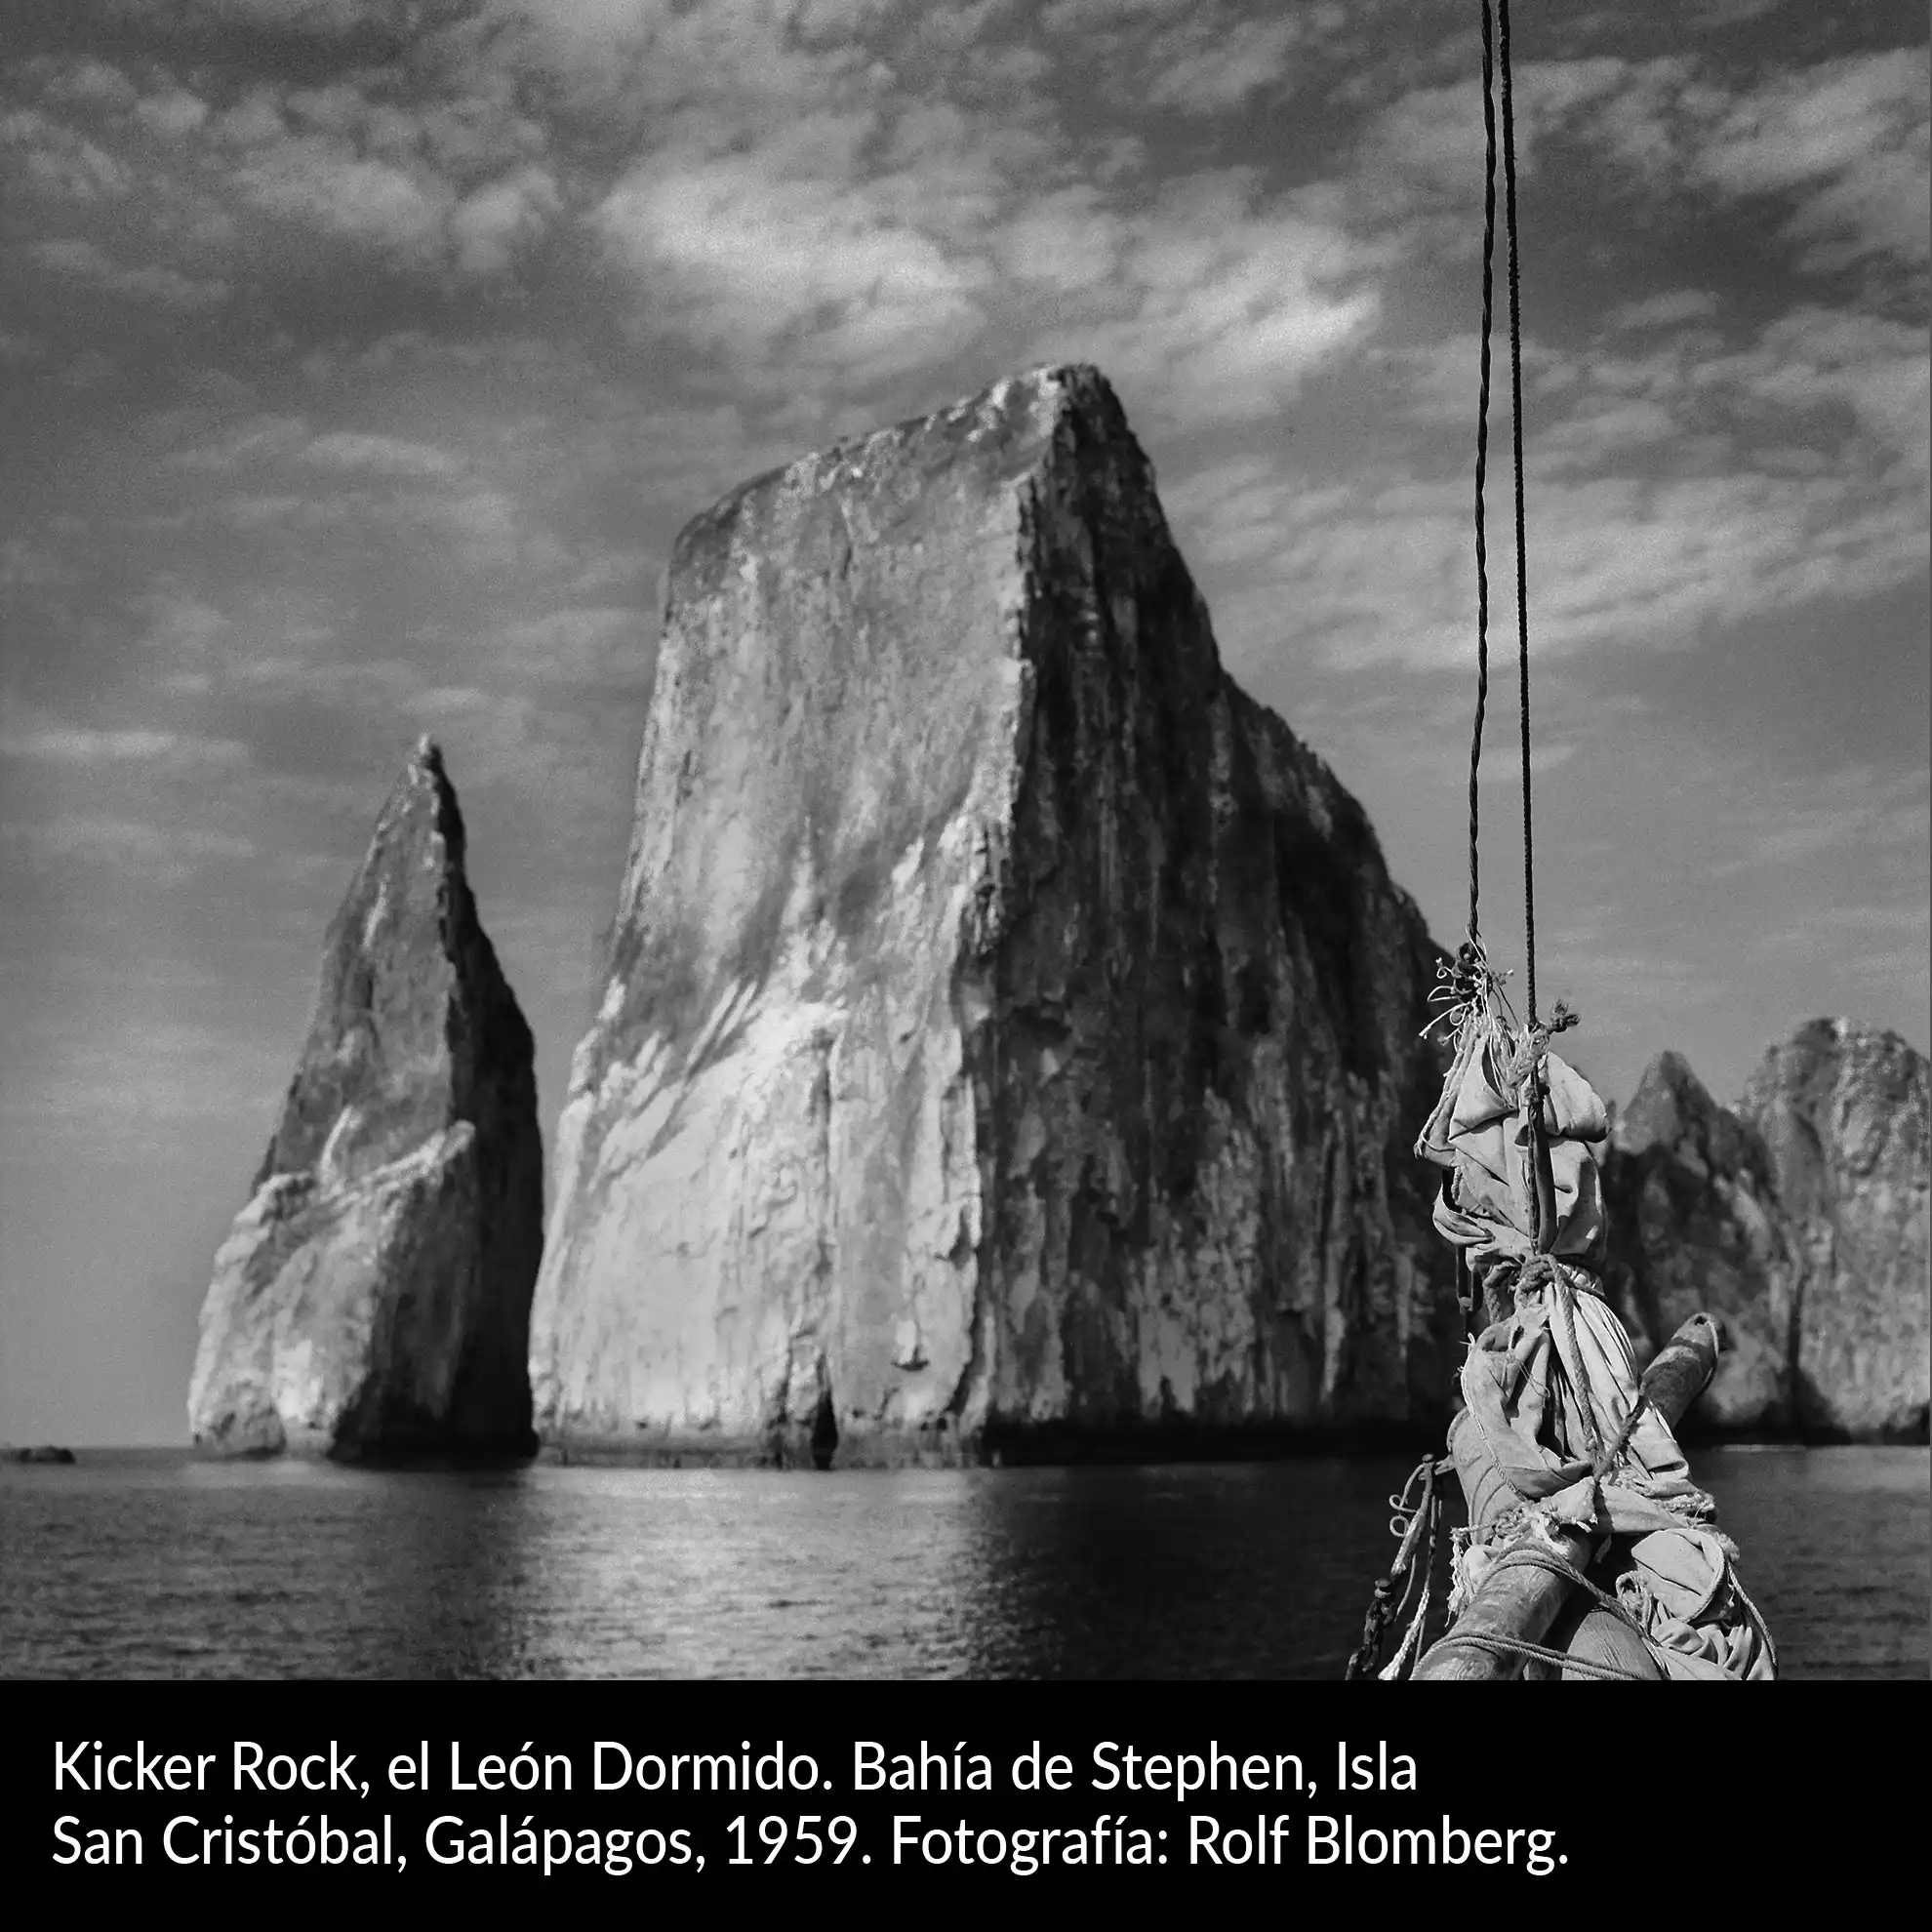 Kicker Rock, el León Dormido. Isla San Cristóbal, Galápagos, 1959. Fotografía: Rolf Blomberg.